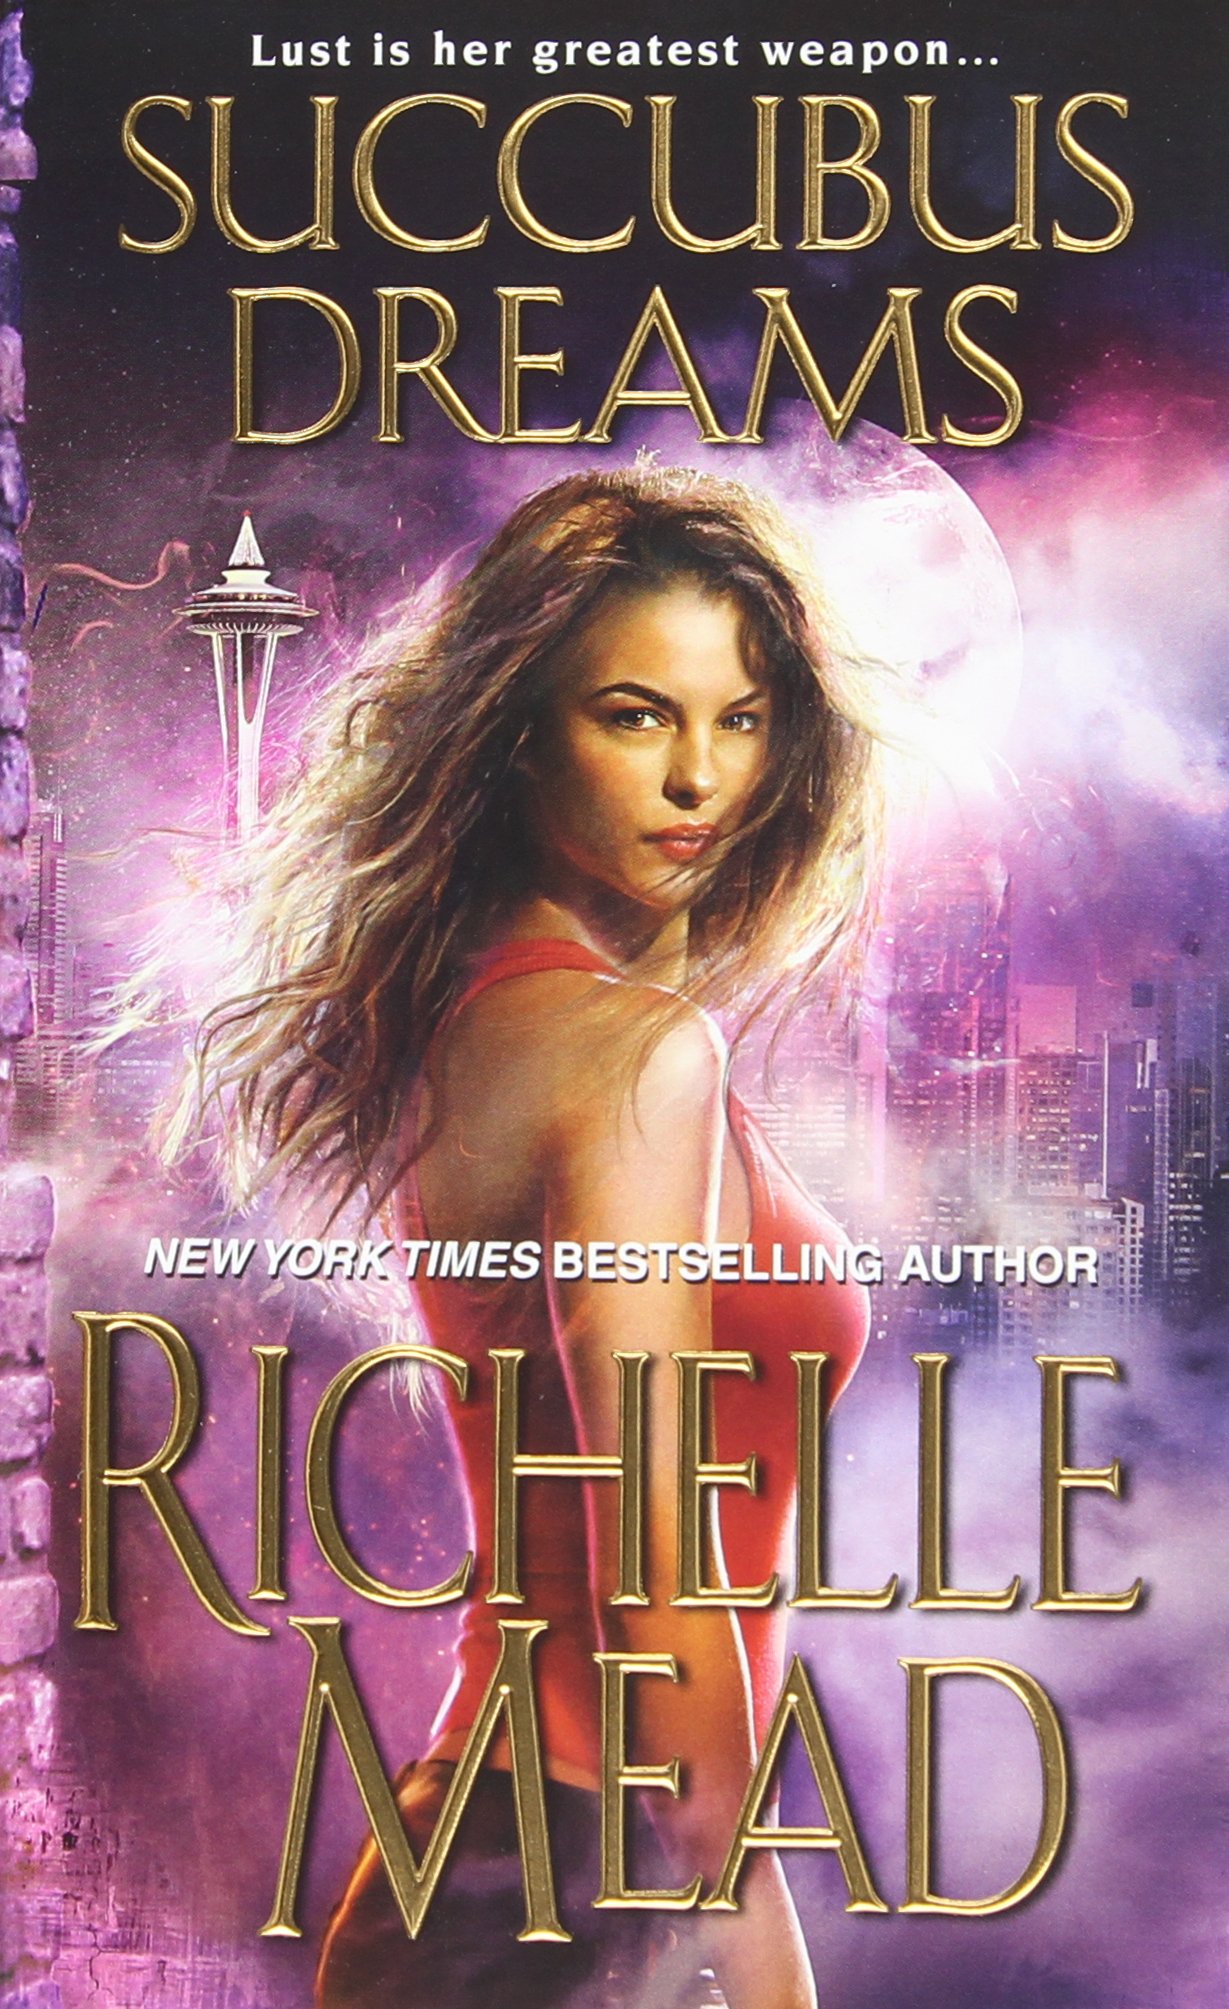 Richelle Mead - Succubus Dreams -